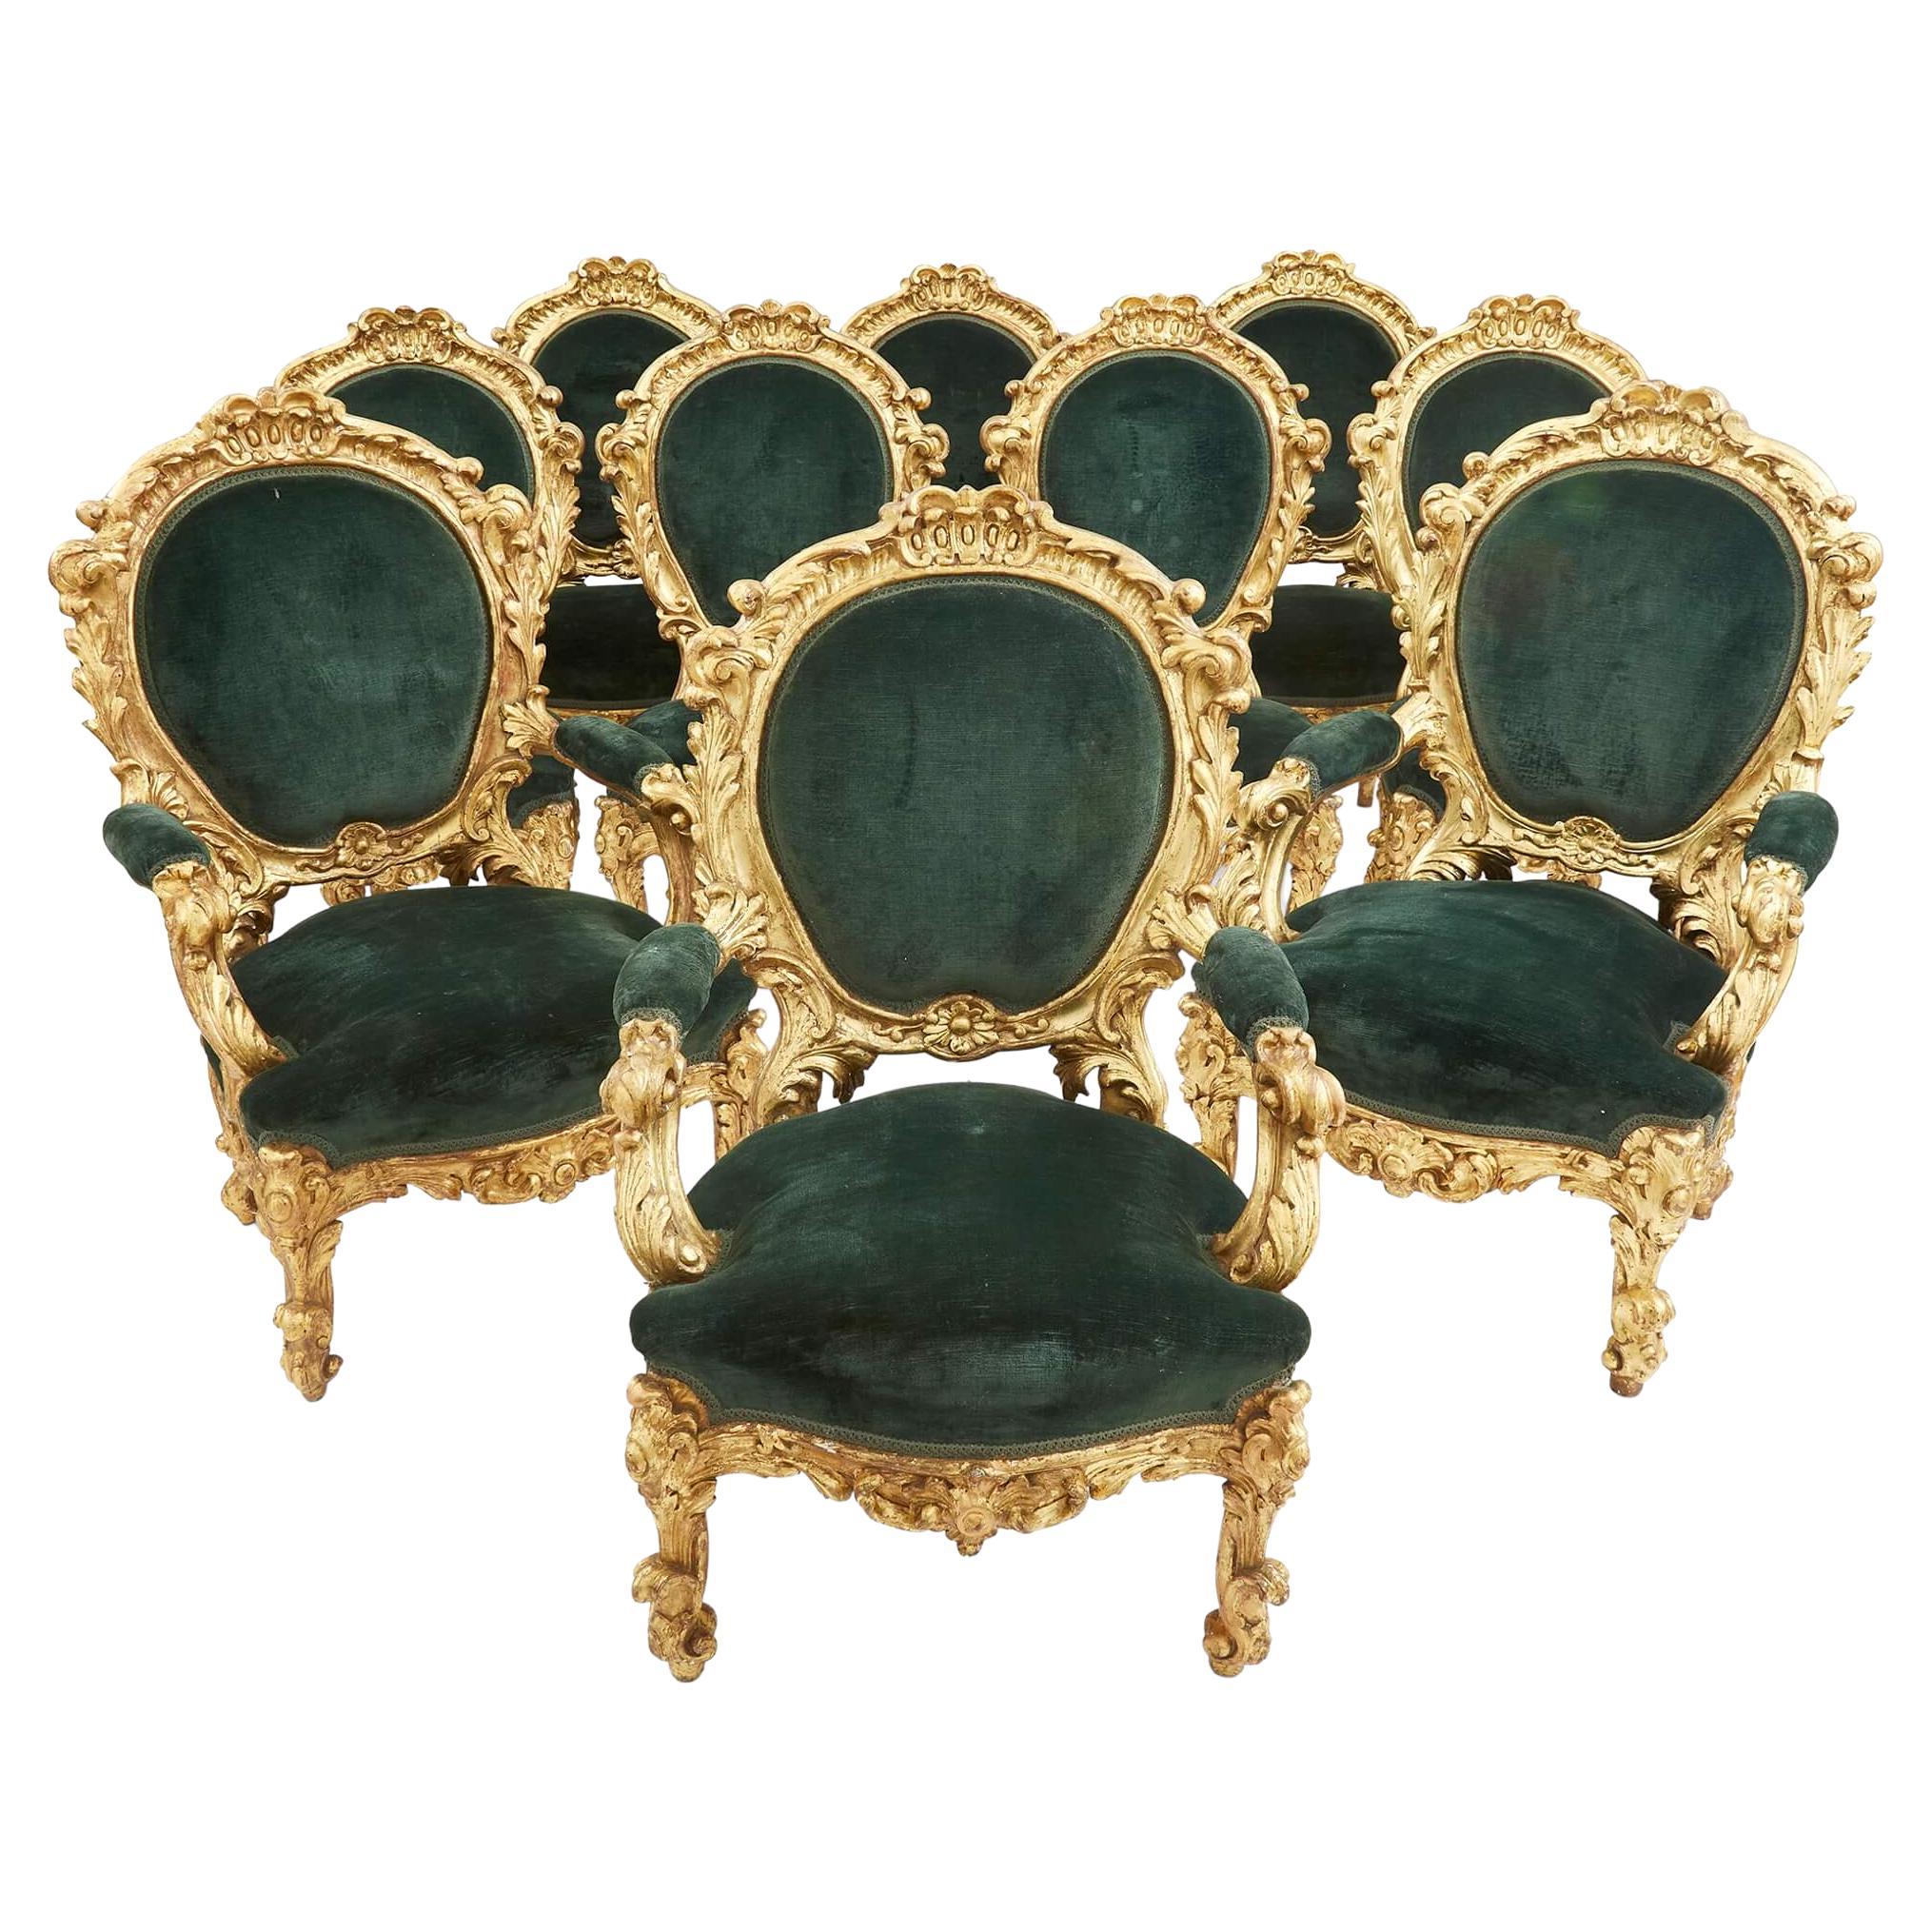 Suite de chaises palazzo italiennes en bois doré du XIXe siècle